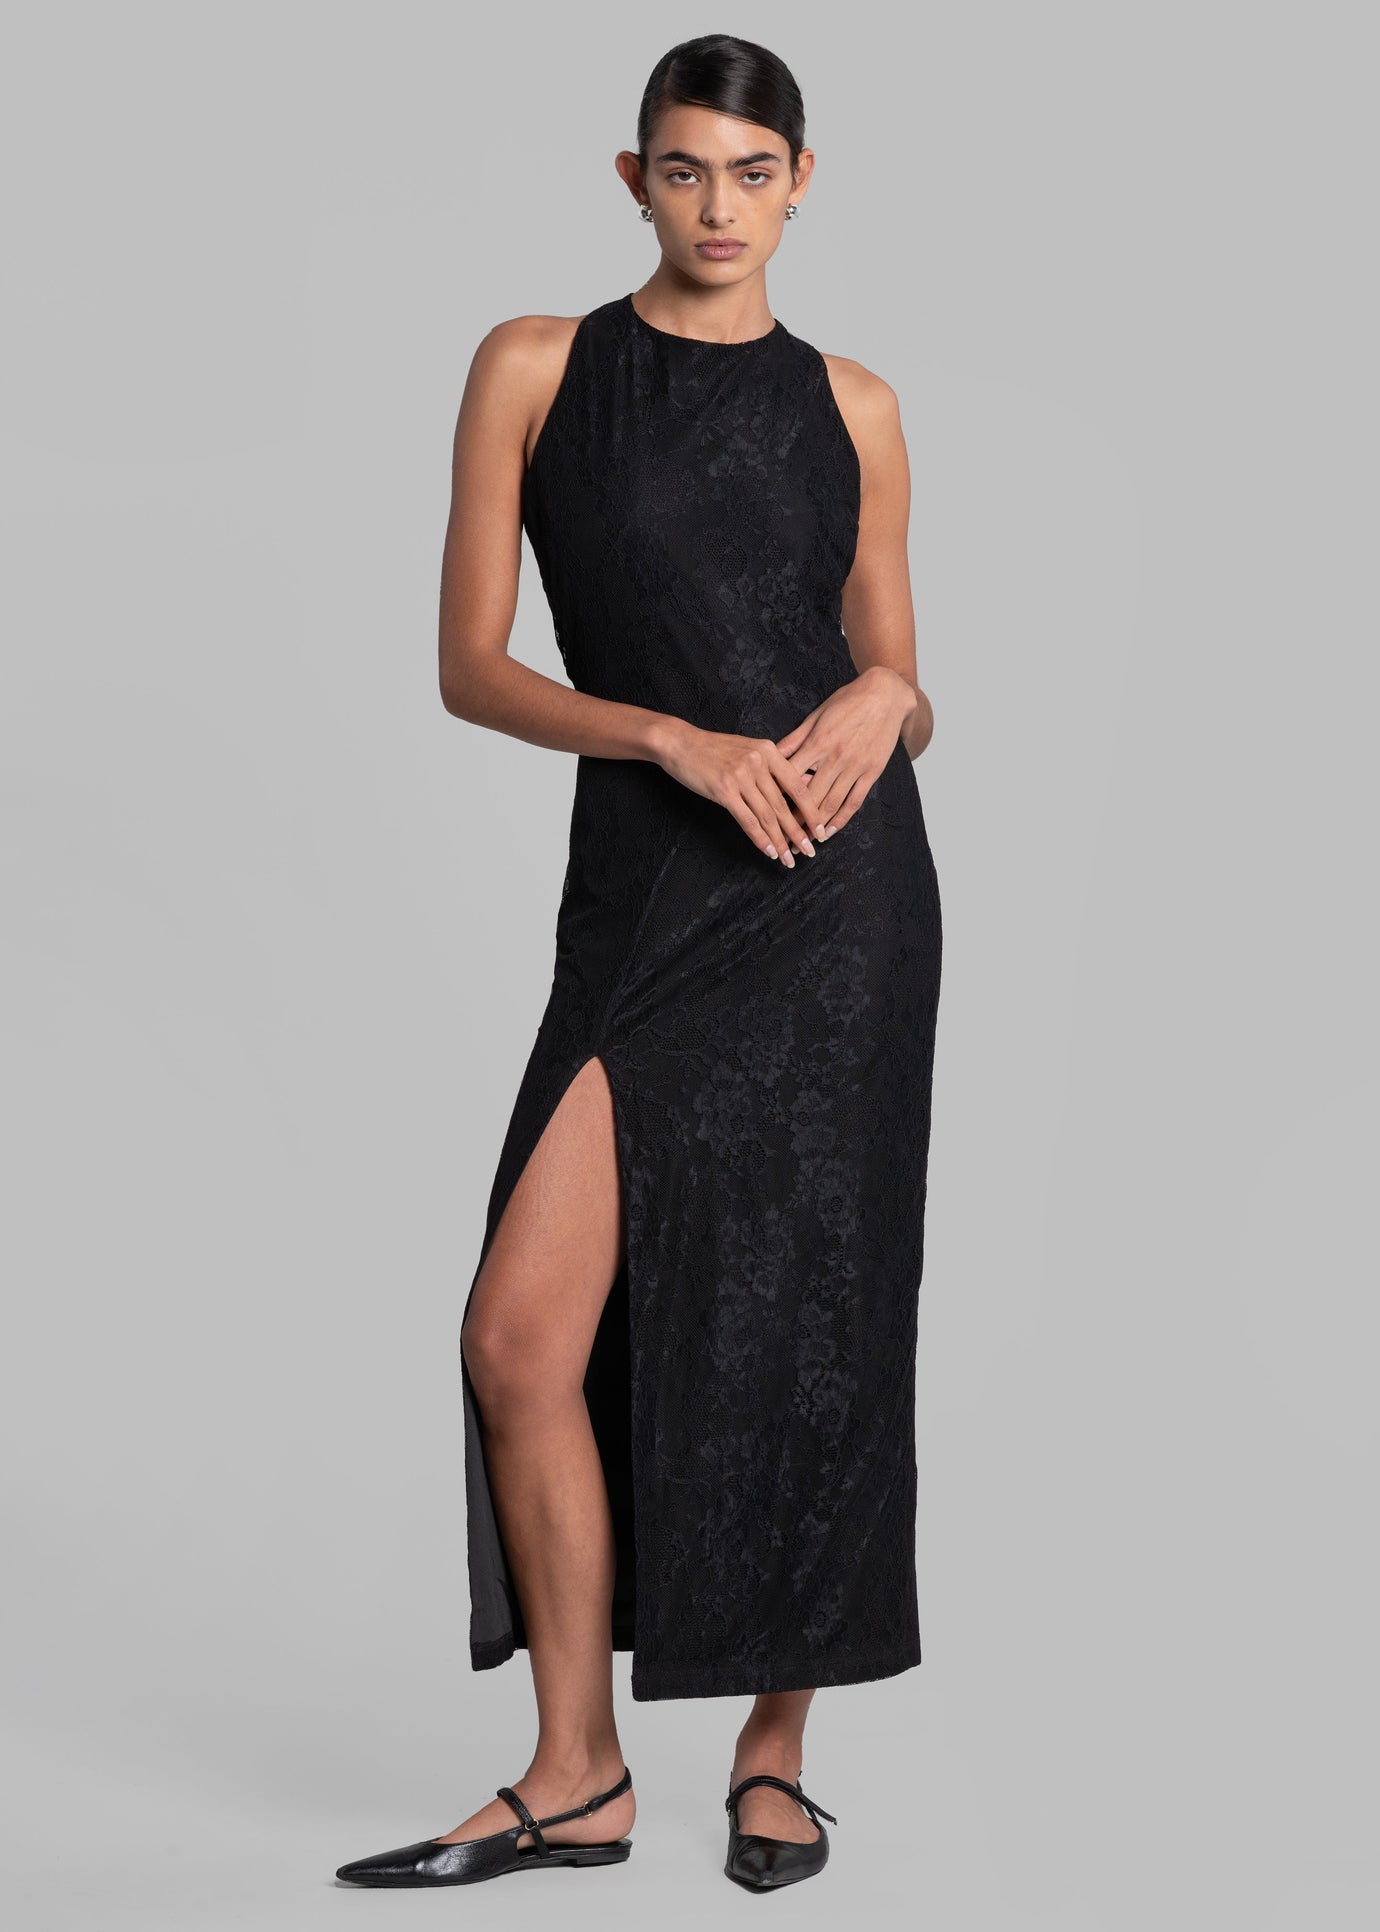 ROTATE Mesh Lace Slit Dress - Black - 1